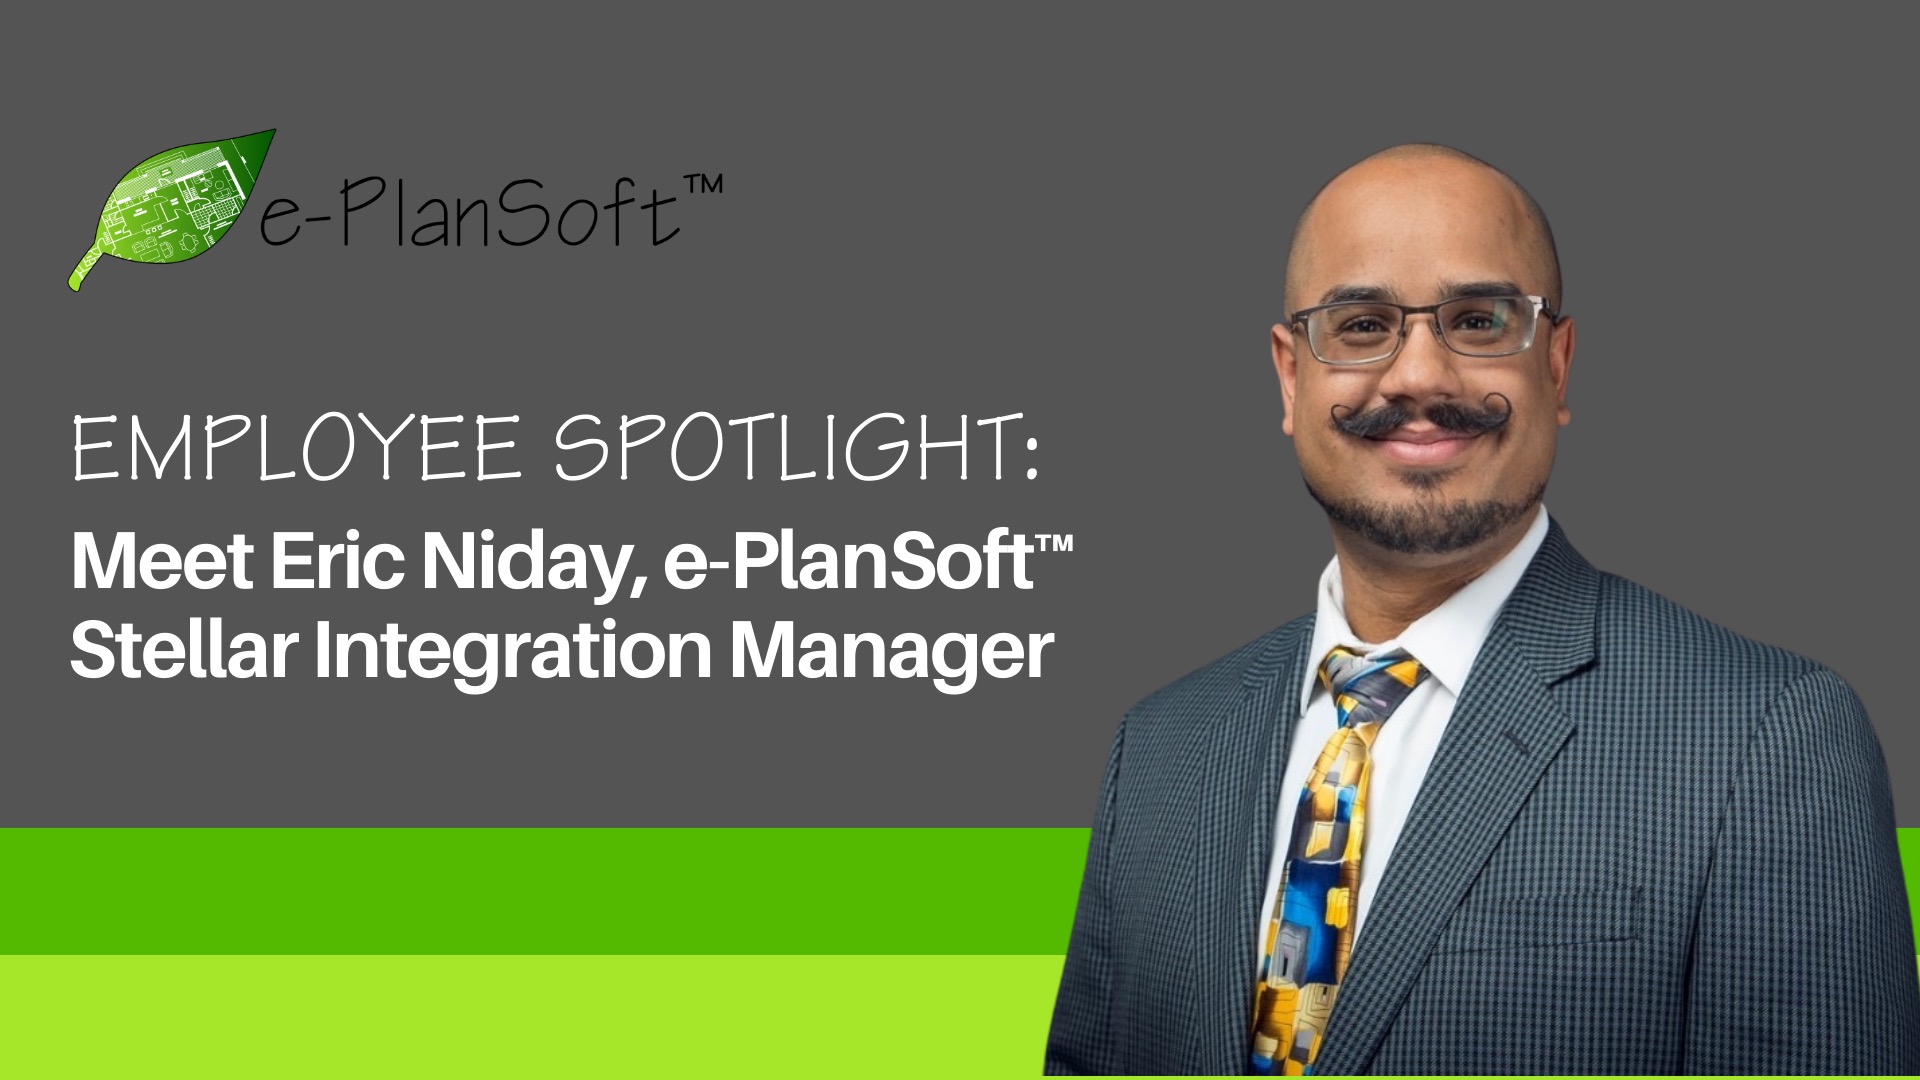 Employee Spotlight: Meet Eric Niday, e-PlanSoft™s Stellar Integration Manager